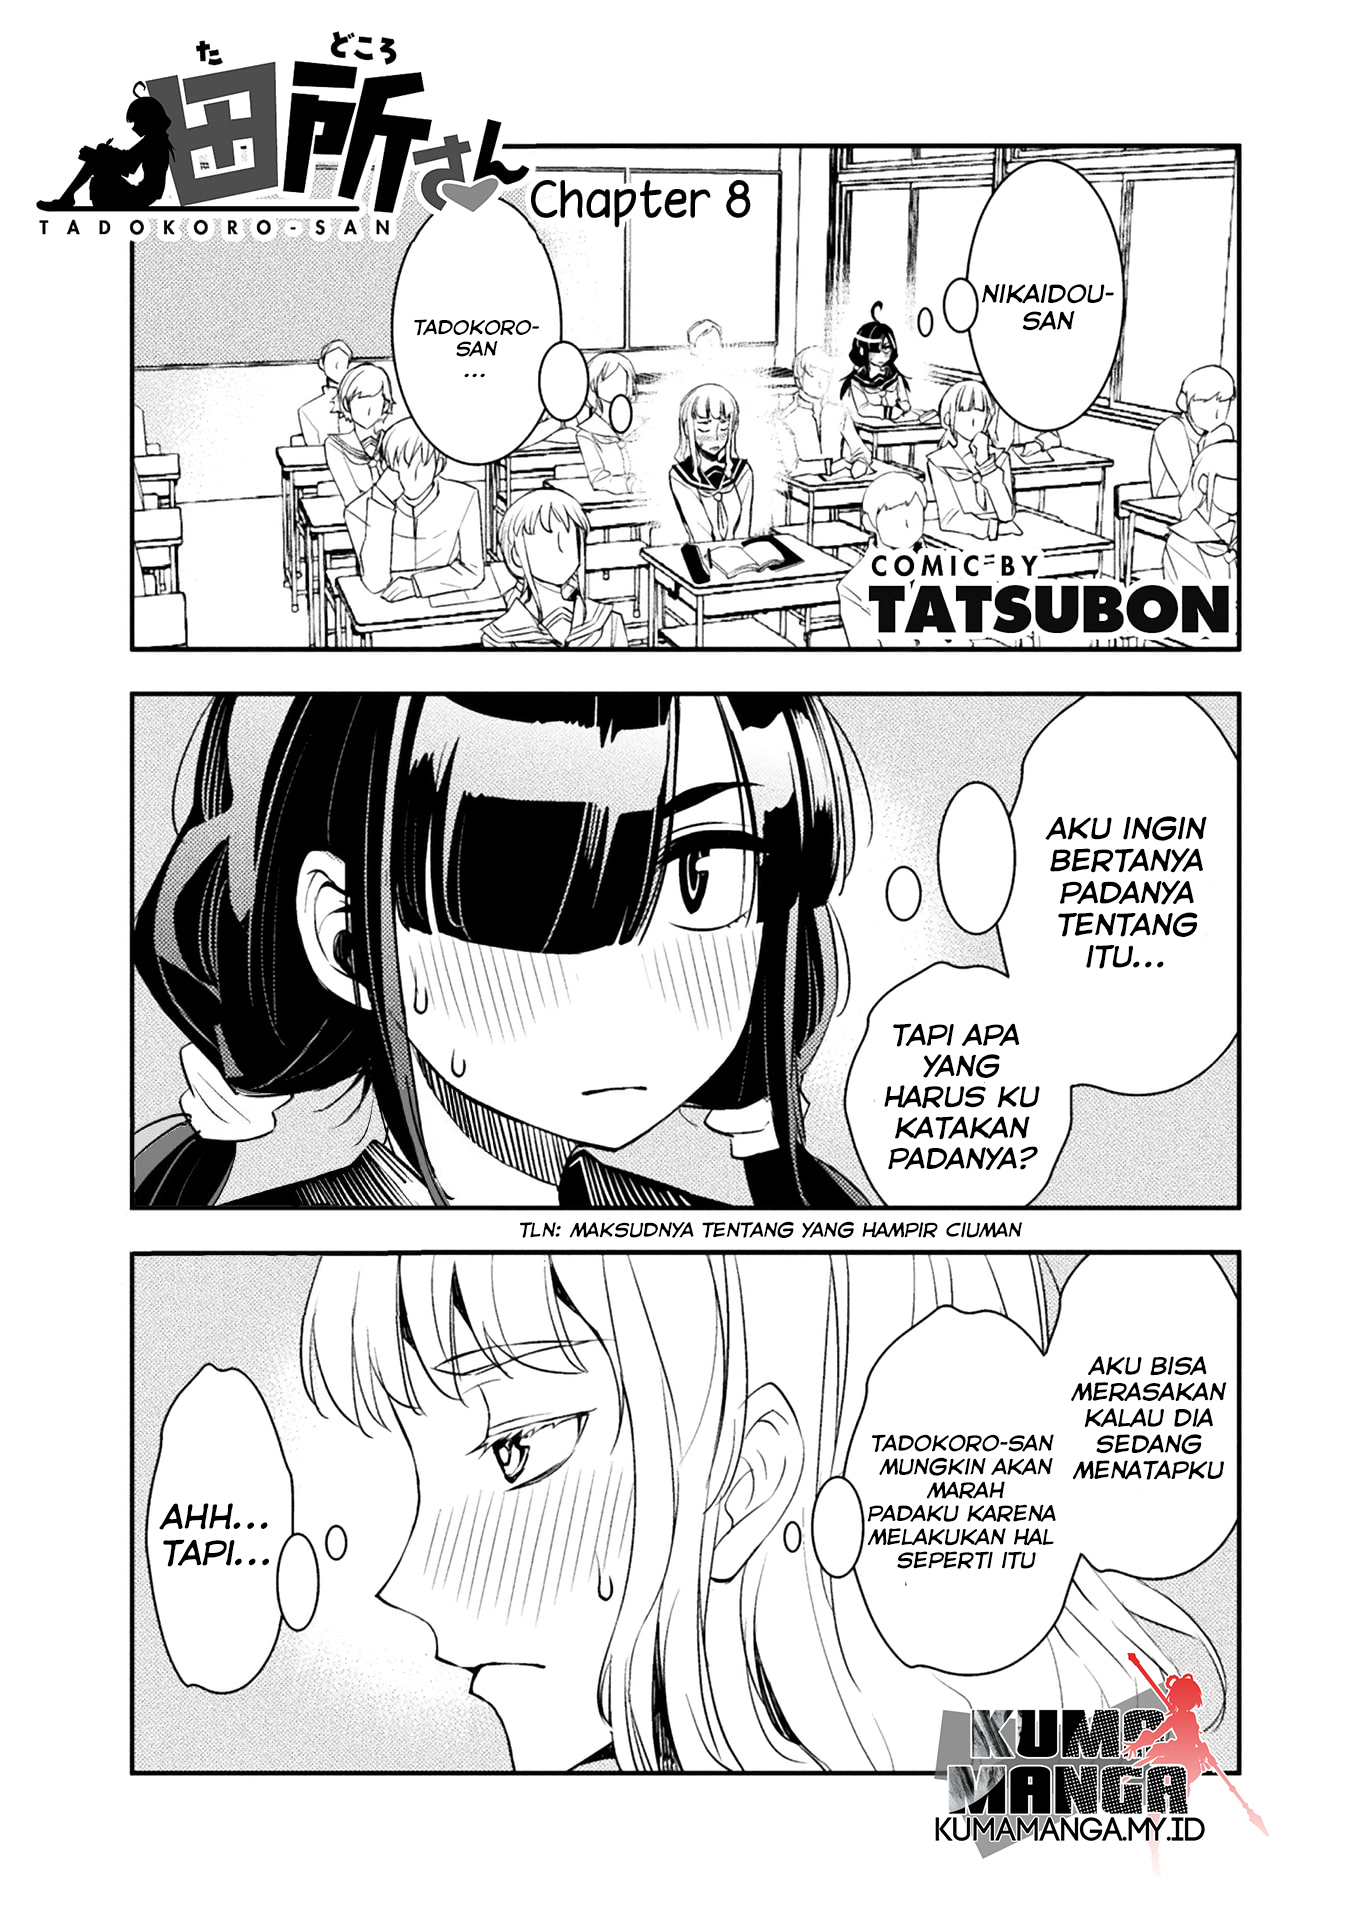 Tadokoro-san Chapter 8